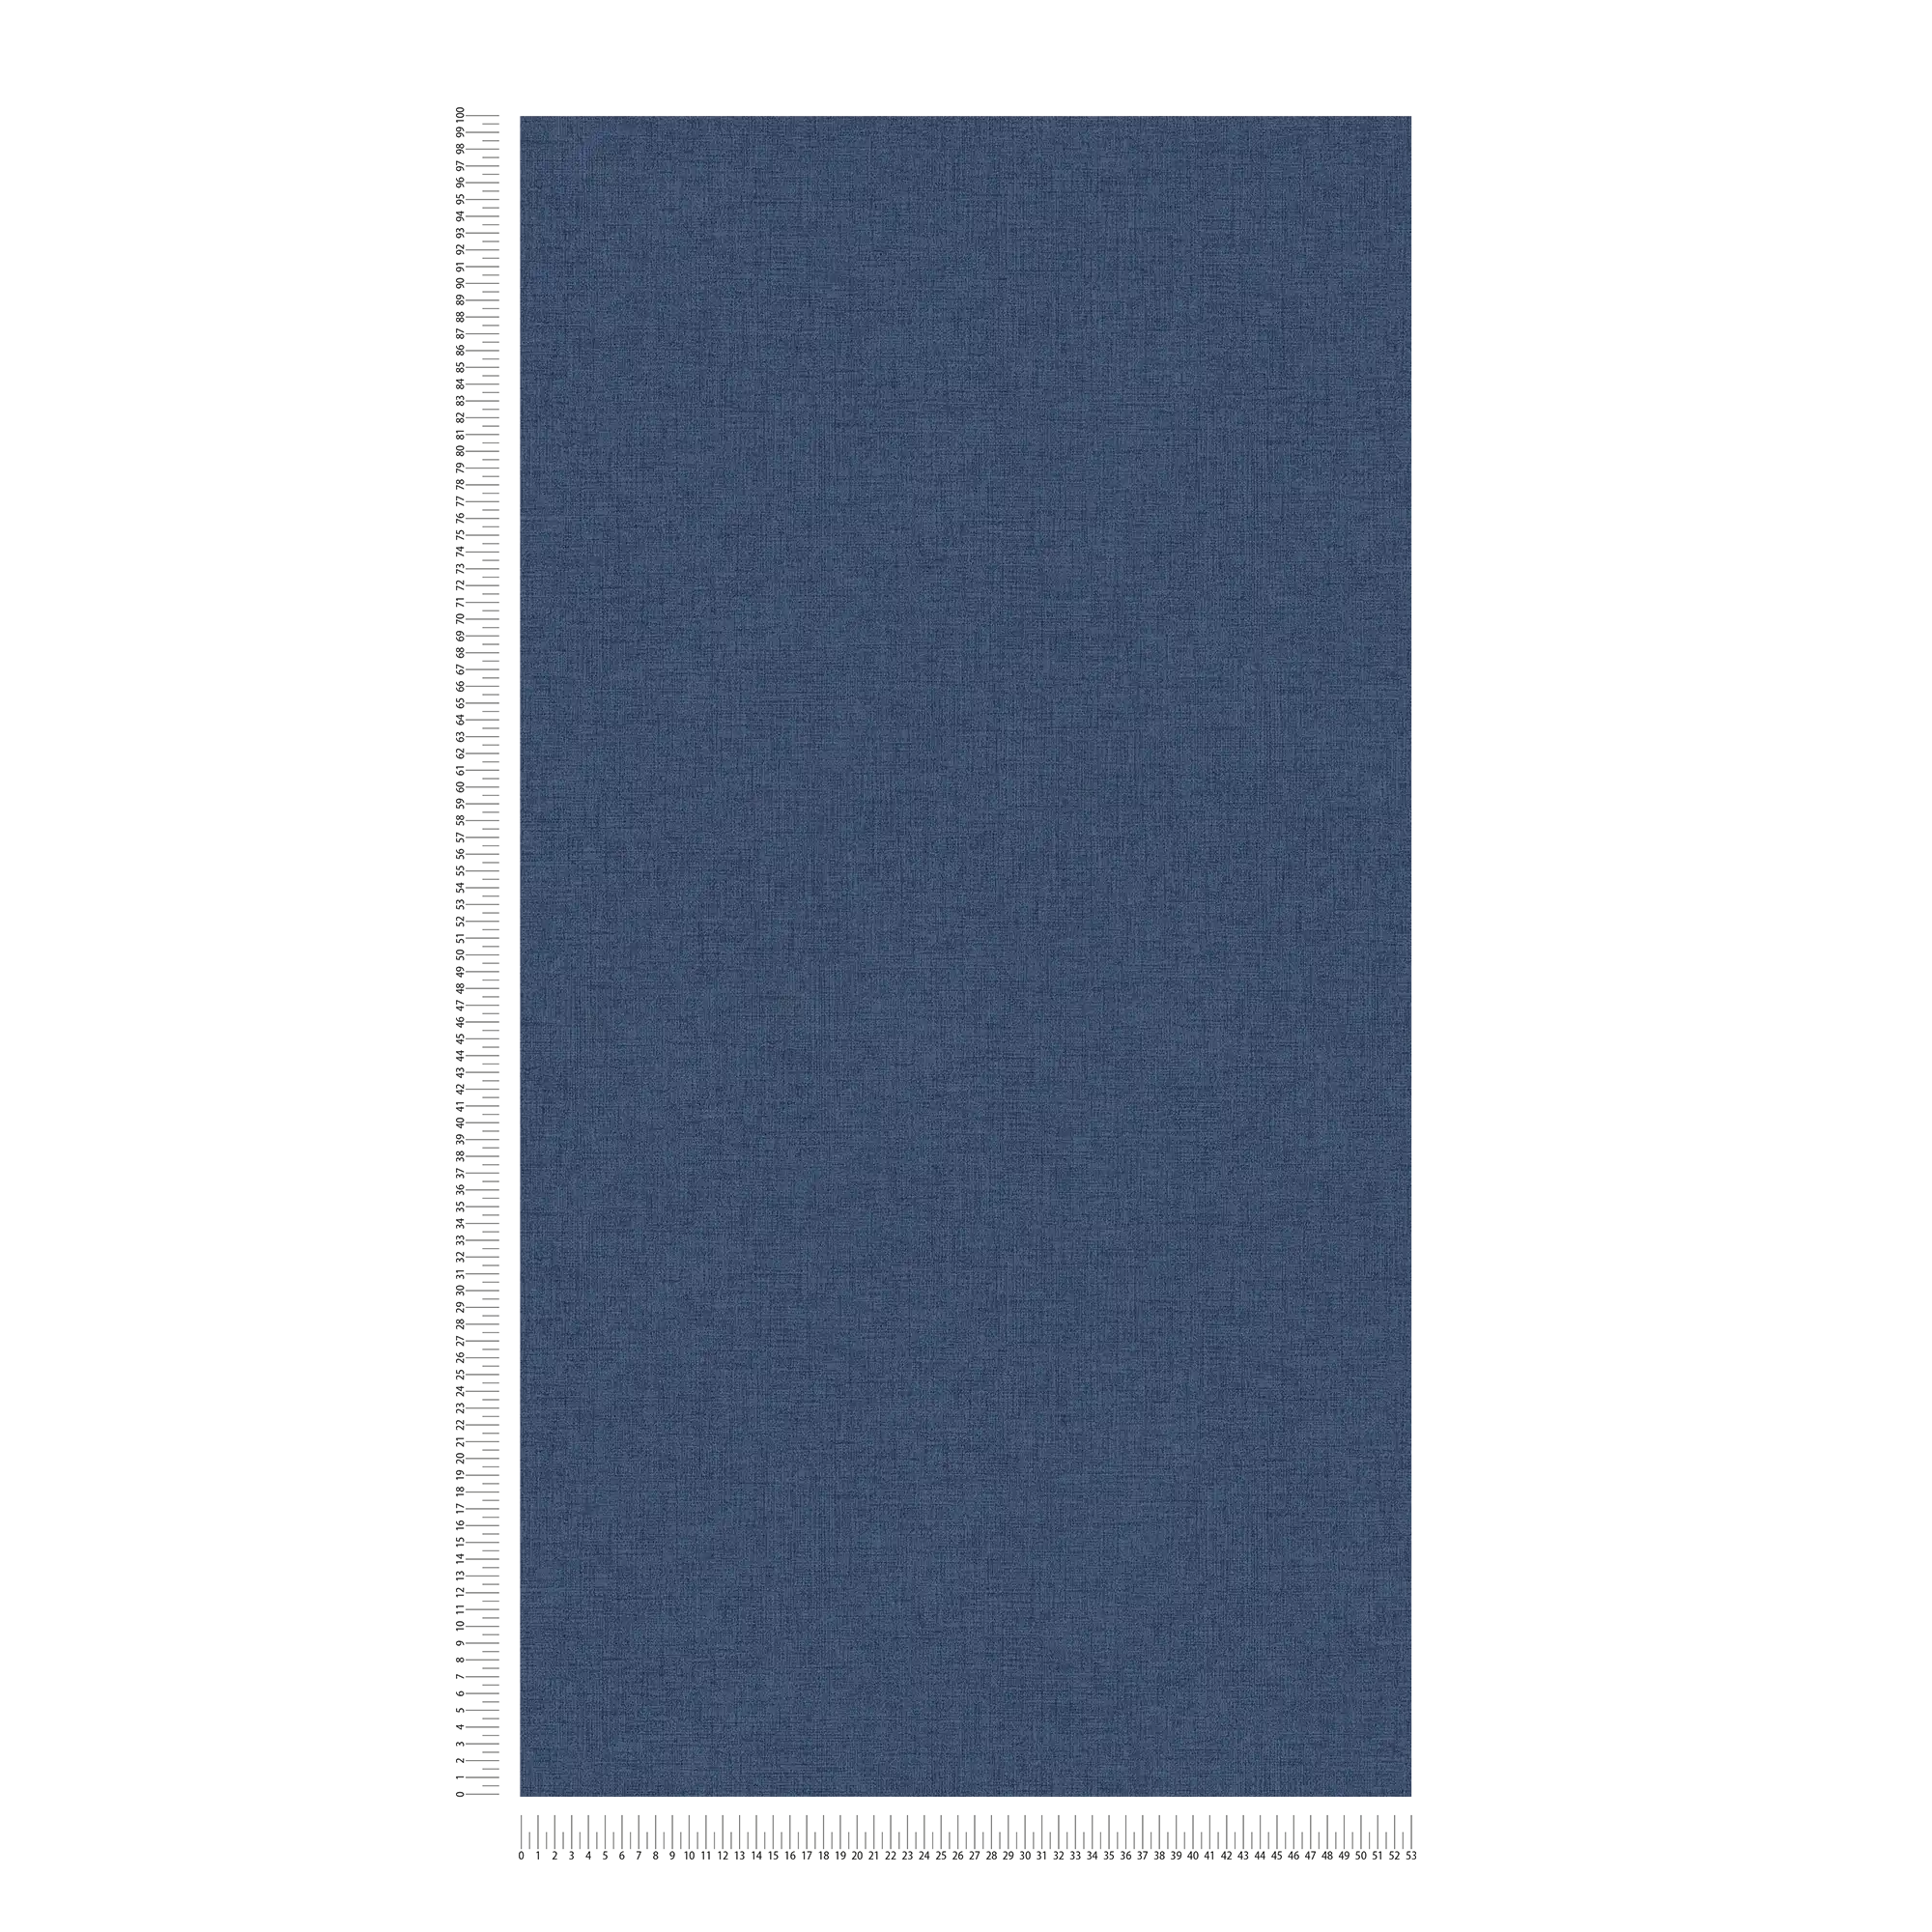             Carta da parati blu navy con aspetto di lino, Navy - Blu
        